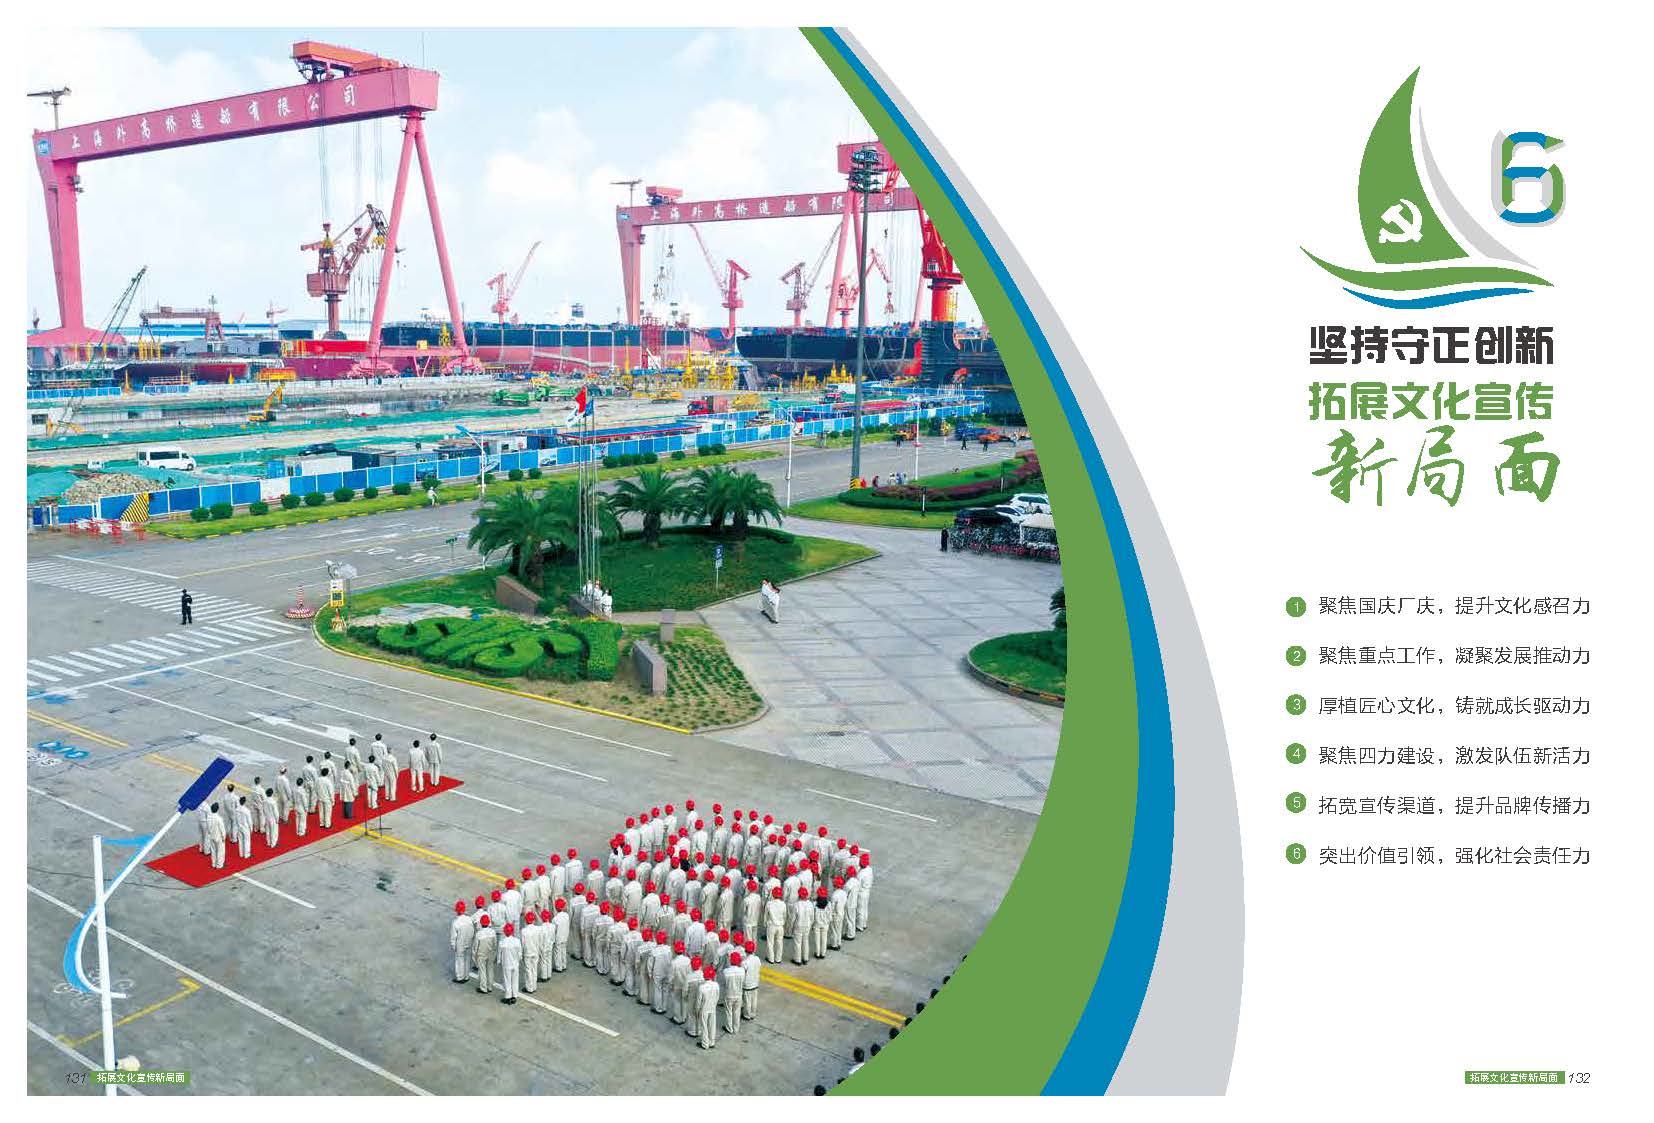 中国船舶集团上海外高桥造船有限公司《外高桥造船2019年党建年报》